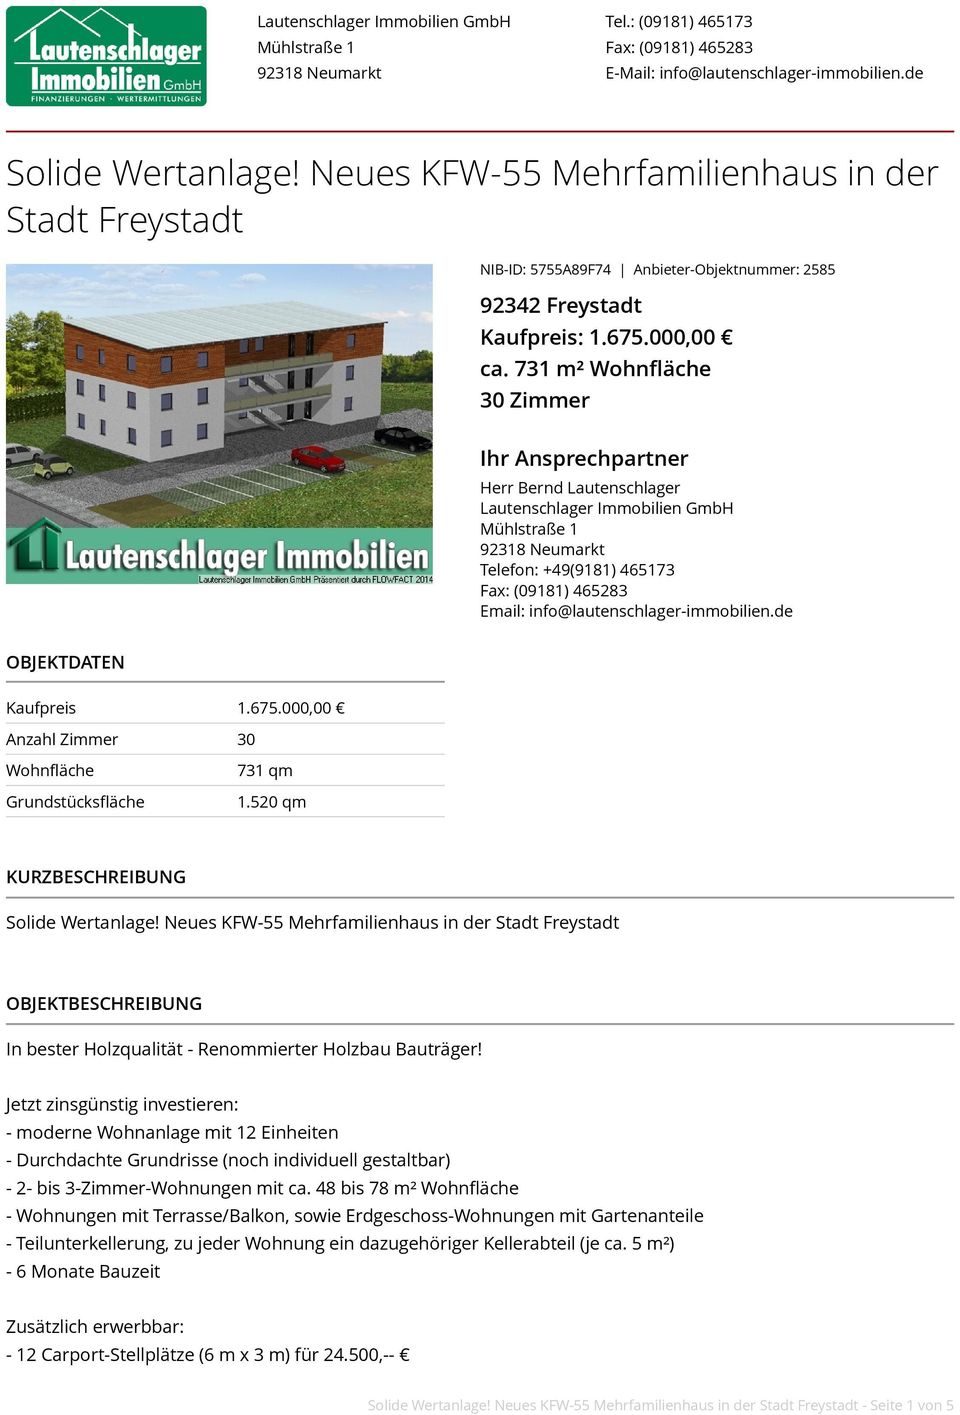 731 m² Wohnfläche 30 Zimmer Ihr Ansprechpartner Herr Bernd Lautenschlager Lautenschlager Immobilien GmbH Telefon: +49(9181) 465173 Fax: (09181) 465283 Email: info@lautenschlager-immobilien.